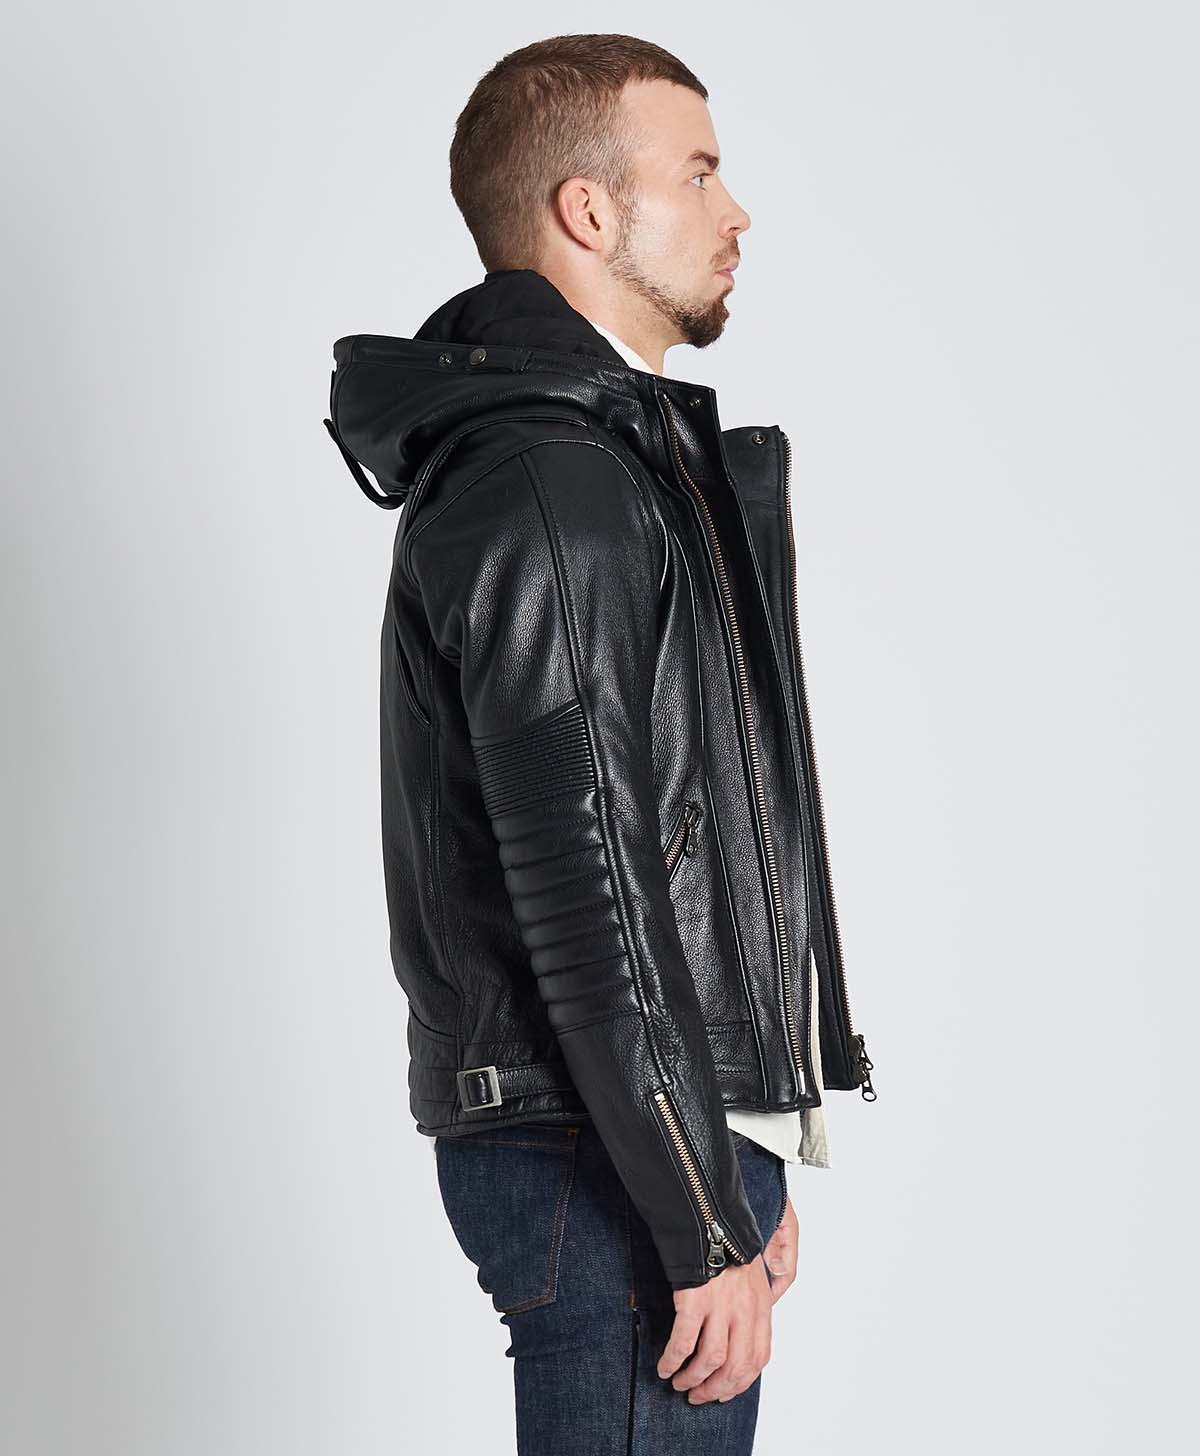 皮夾克連帽皮外套| Kadoya 官方網路商店| MR-LOADED / 黑色